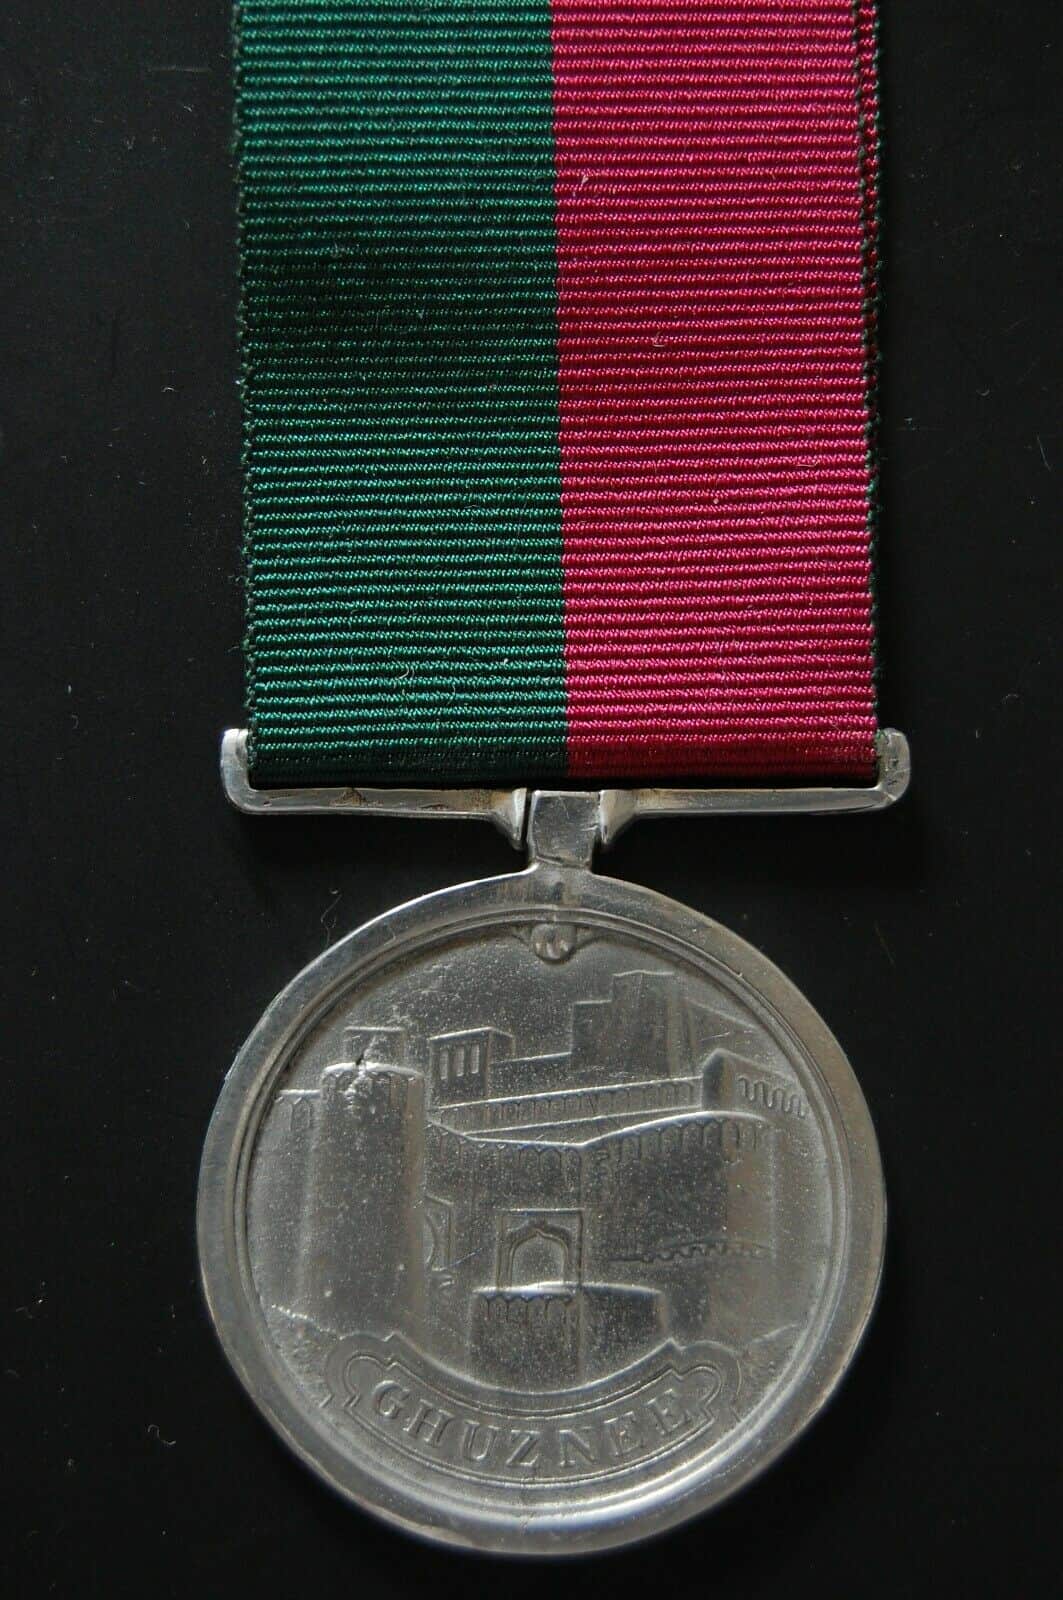 The Ghuznee Medal